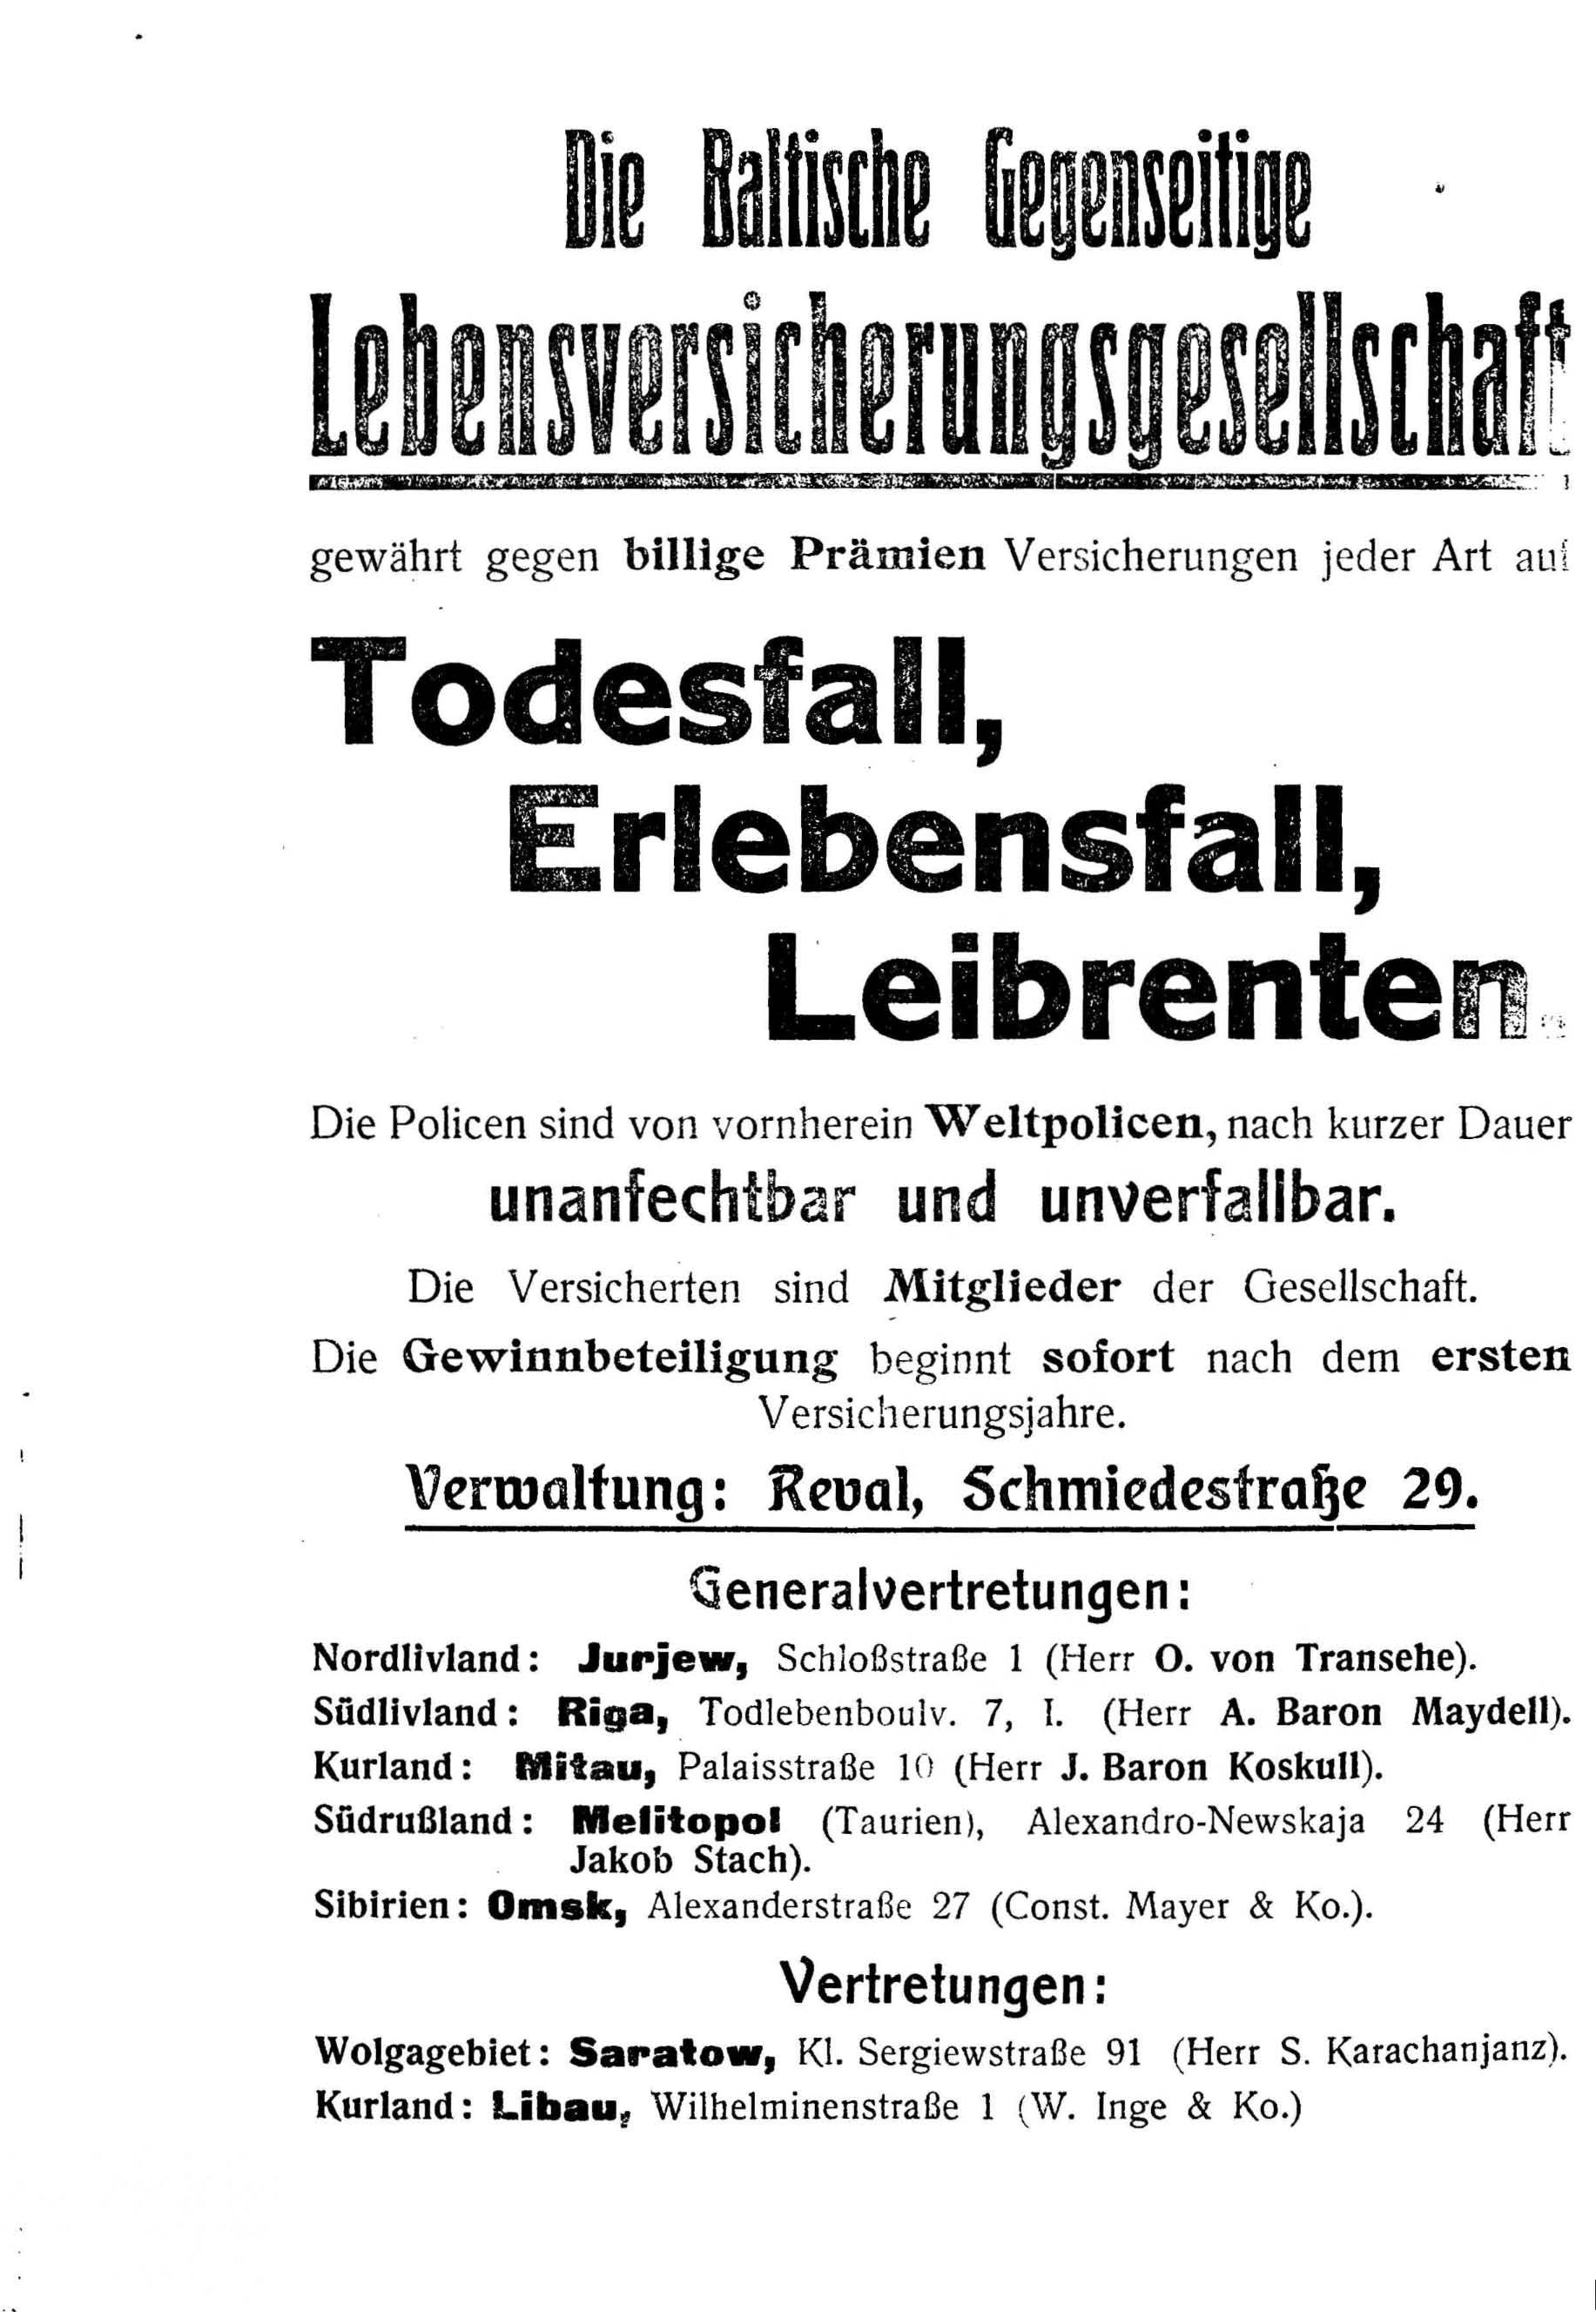 Deutsche Monatsschrift für Russland [4] (1915) | 234. (234) Main body of text